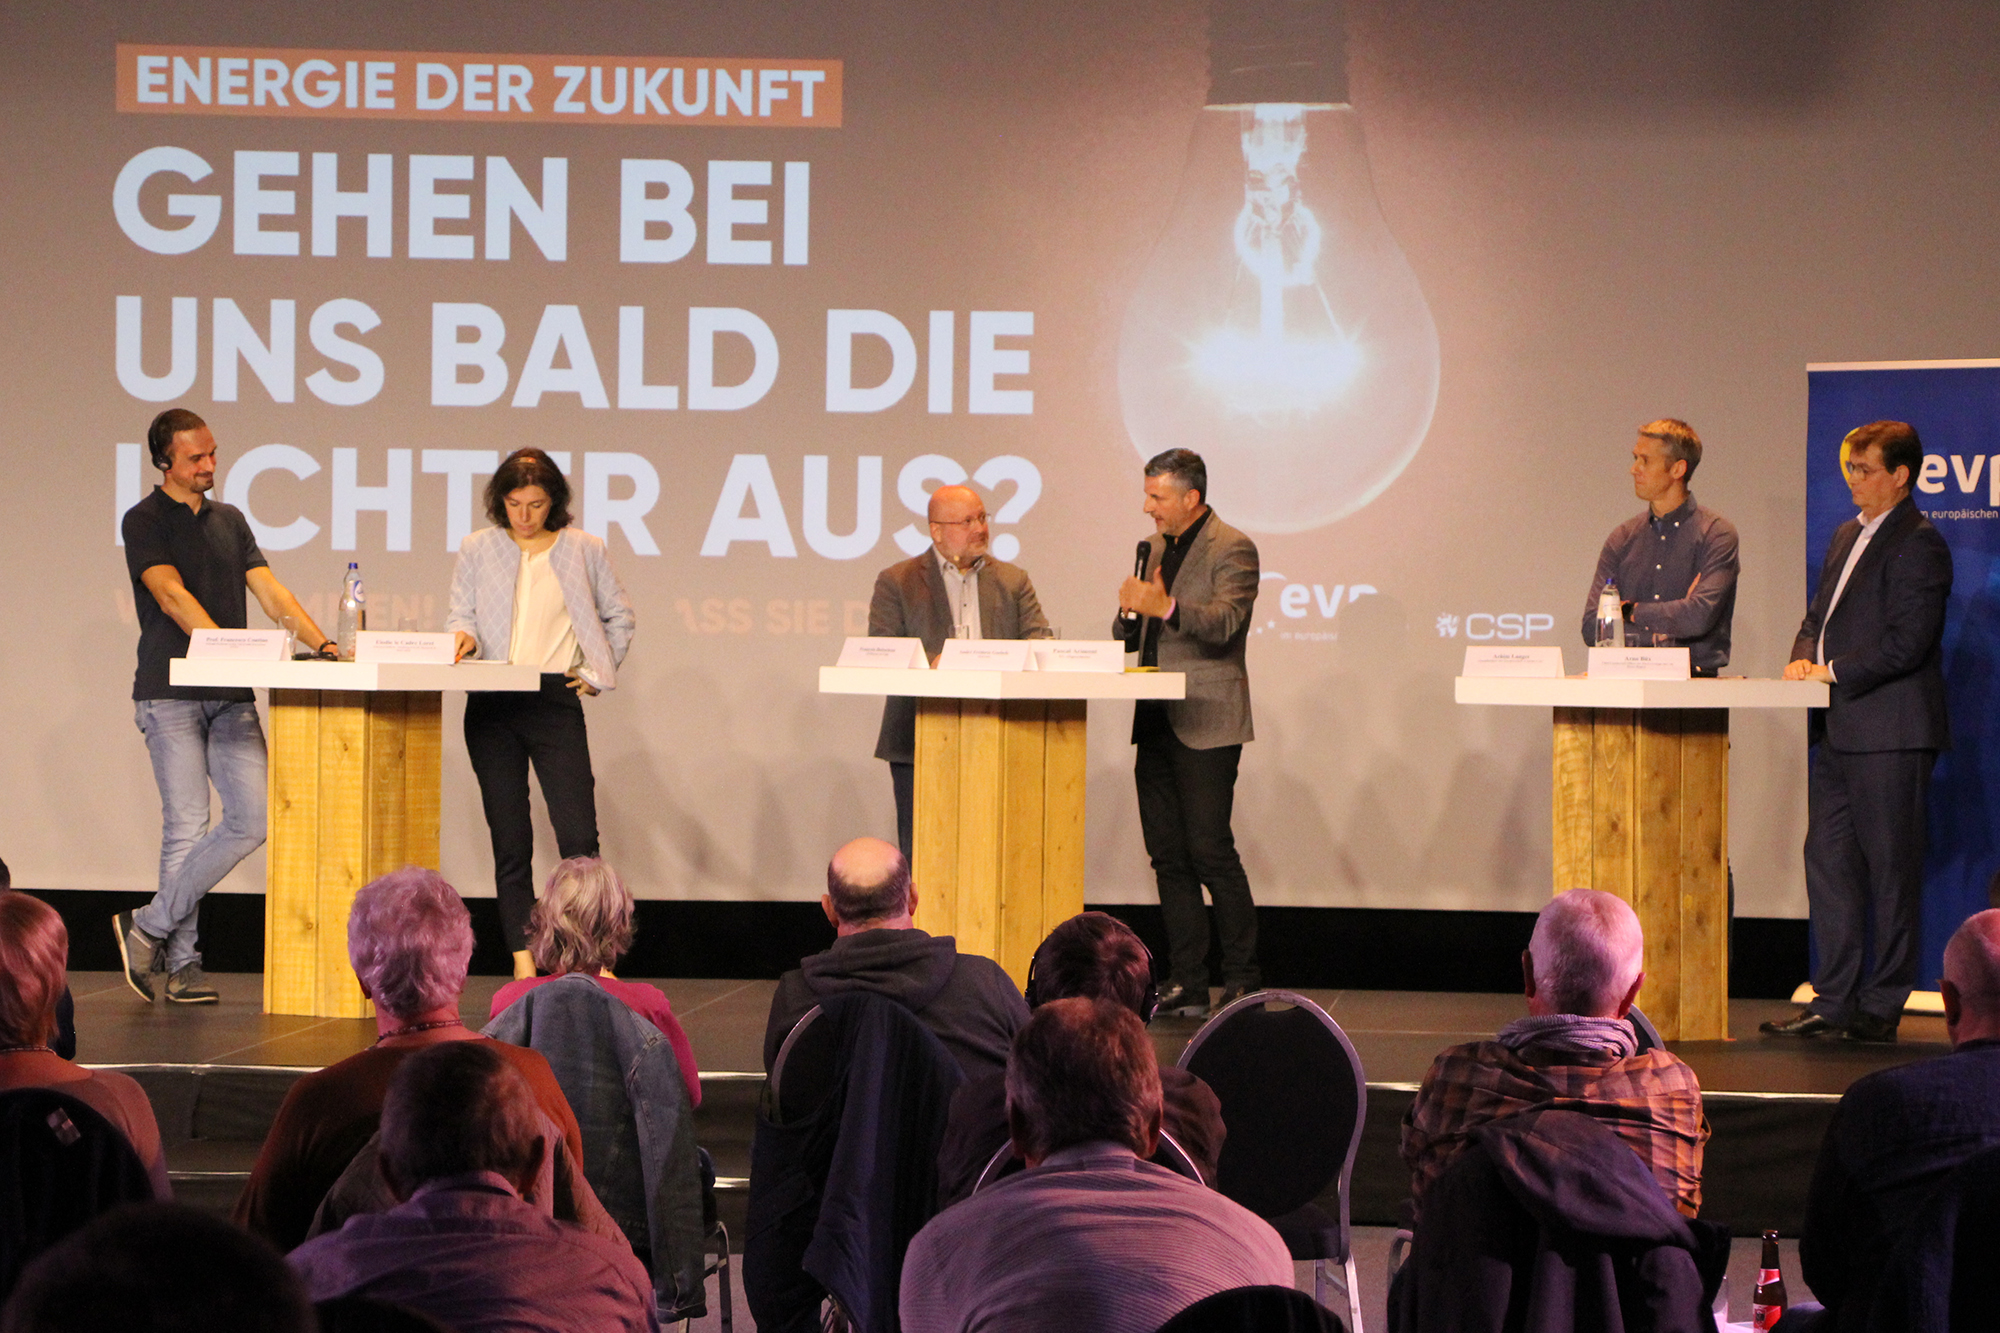 Podiumsdiskussion: "Energie der Zukunft - Gehen bei uns bald die Lichter aus?"